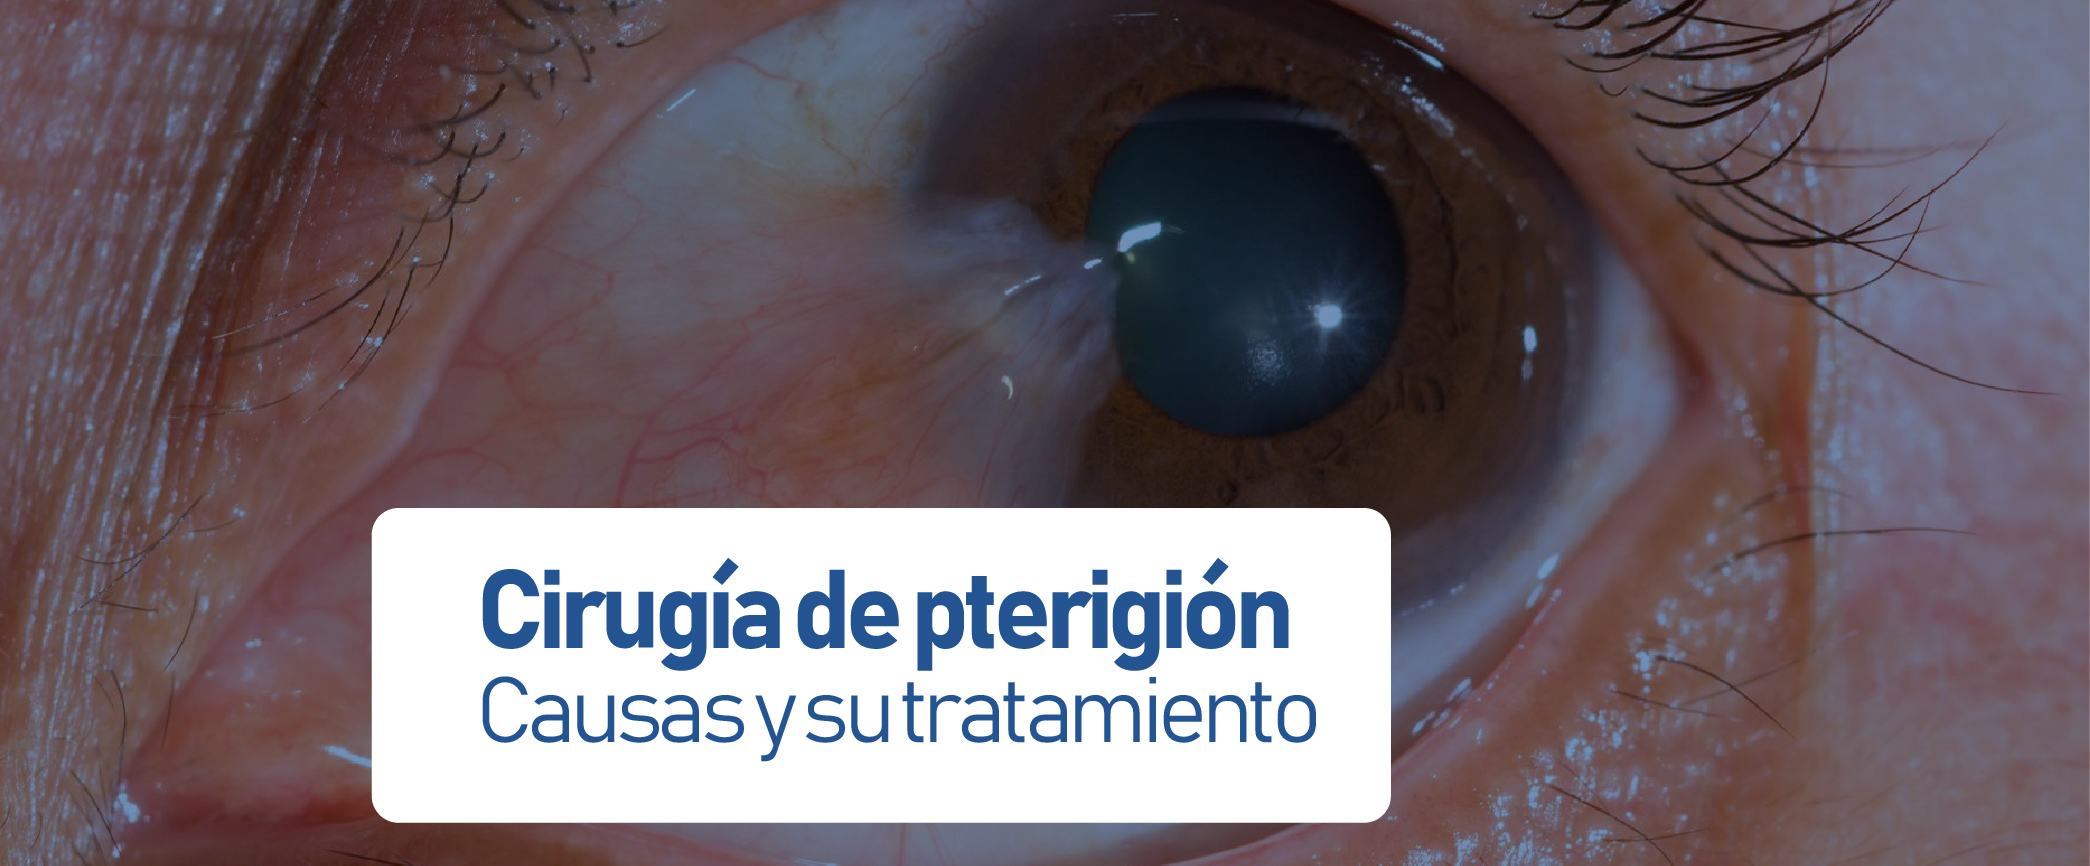 Cirugía de pterigión